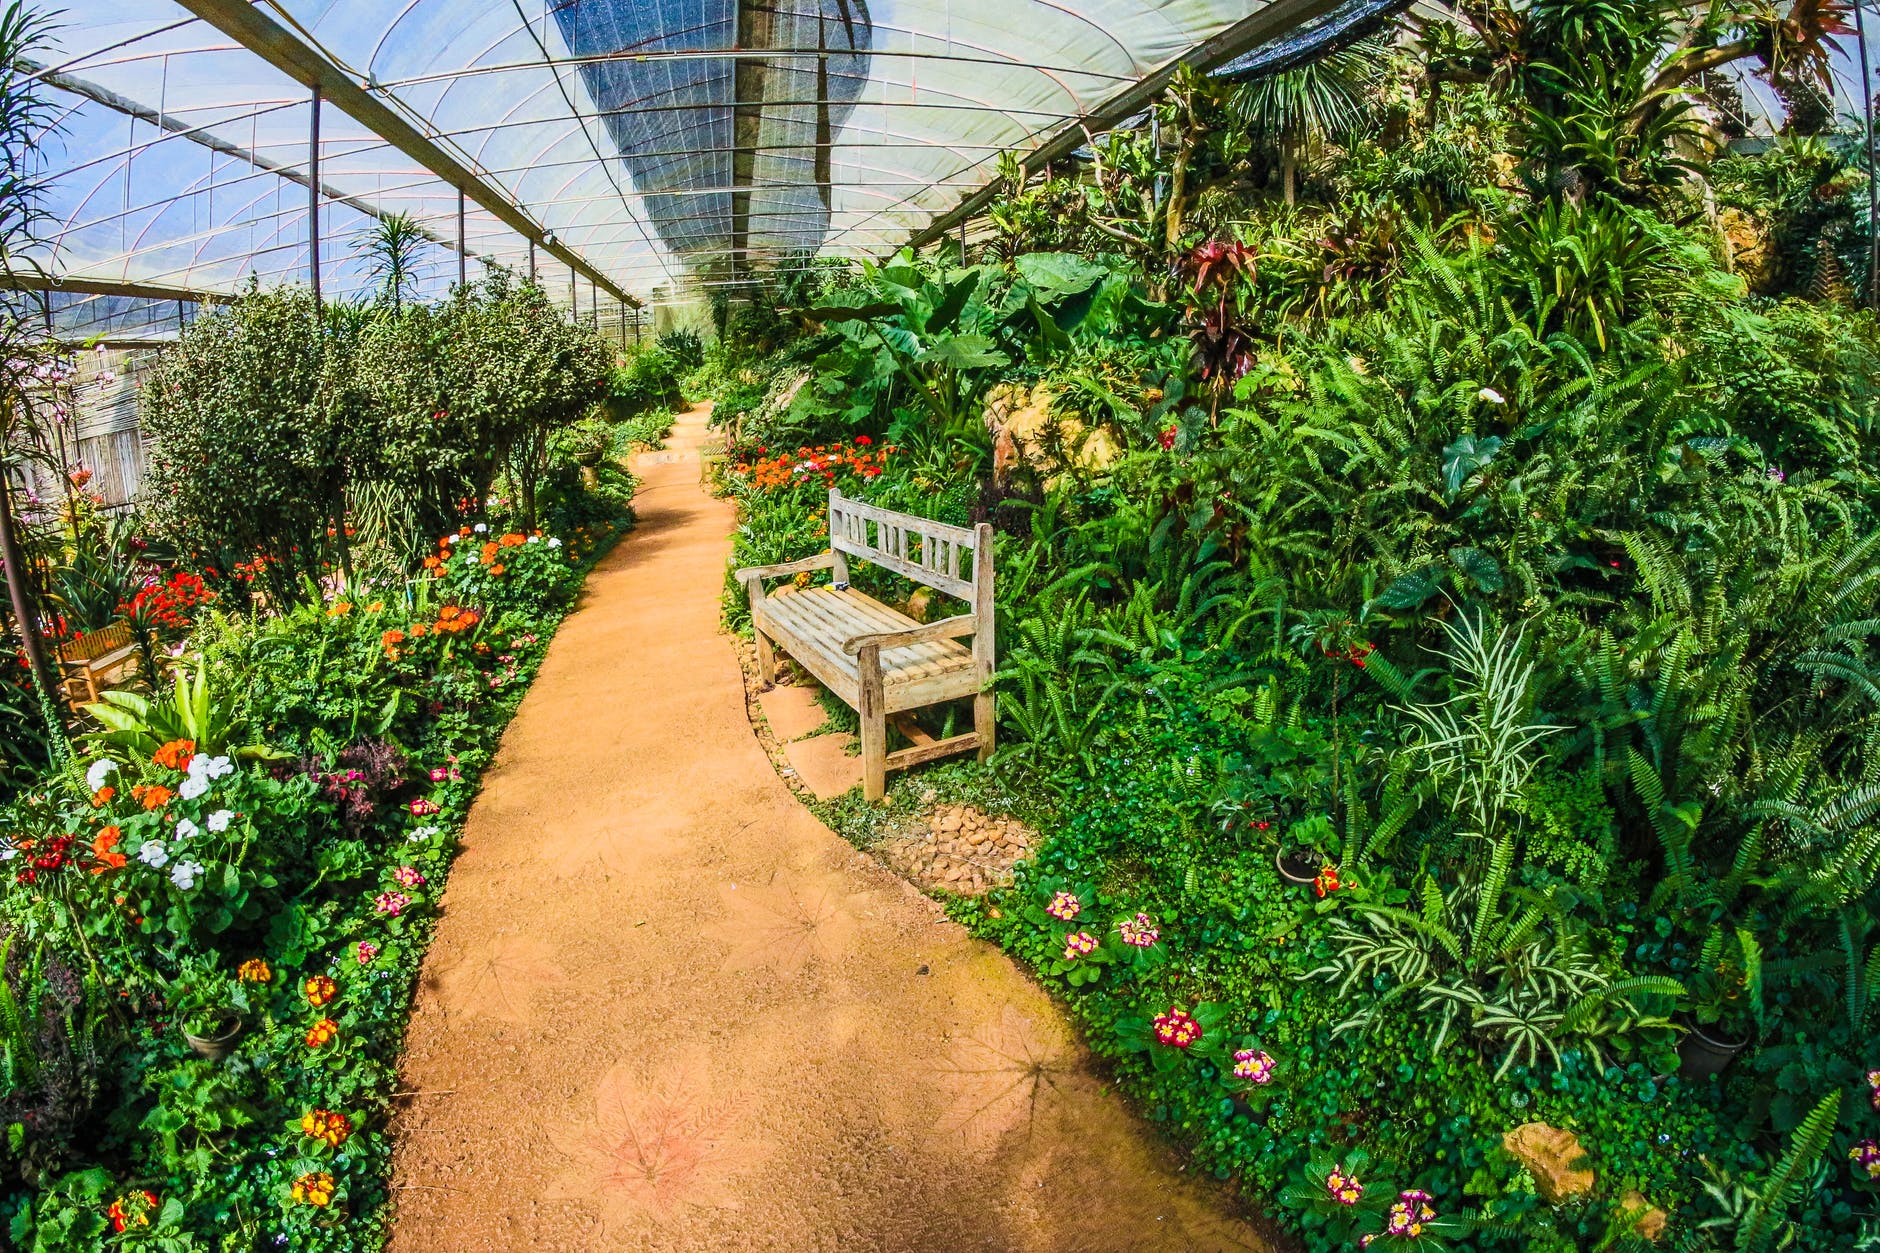 Garden Design Ideas to Grow More in Small Space